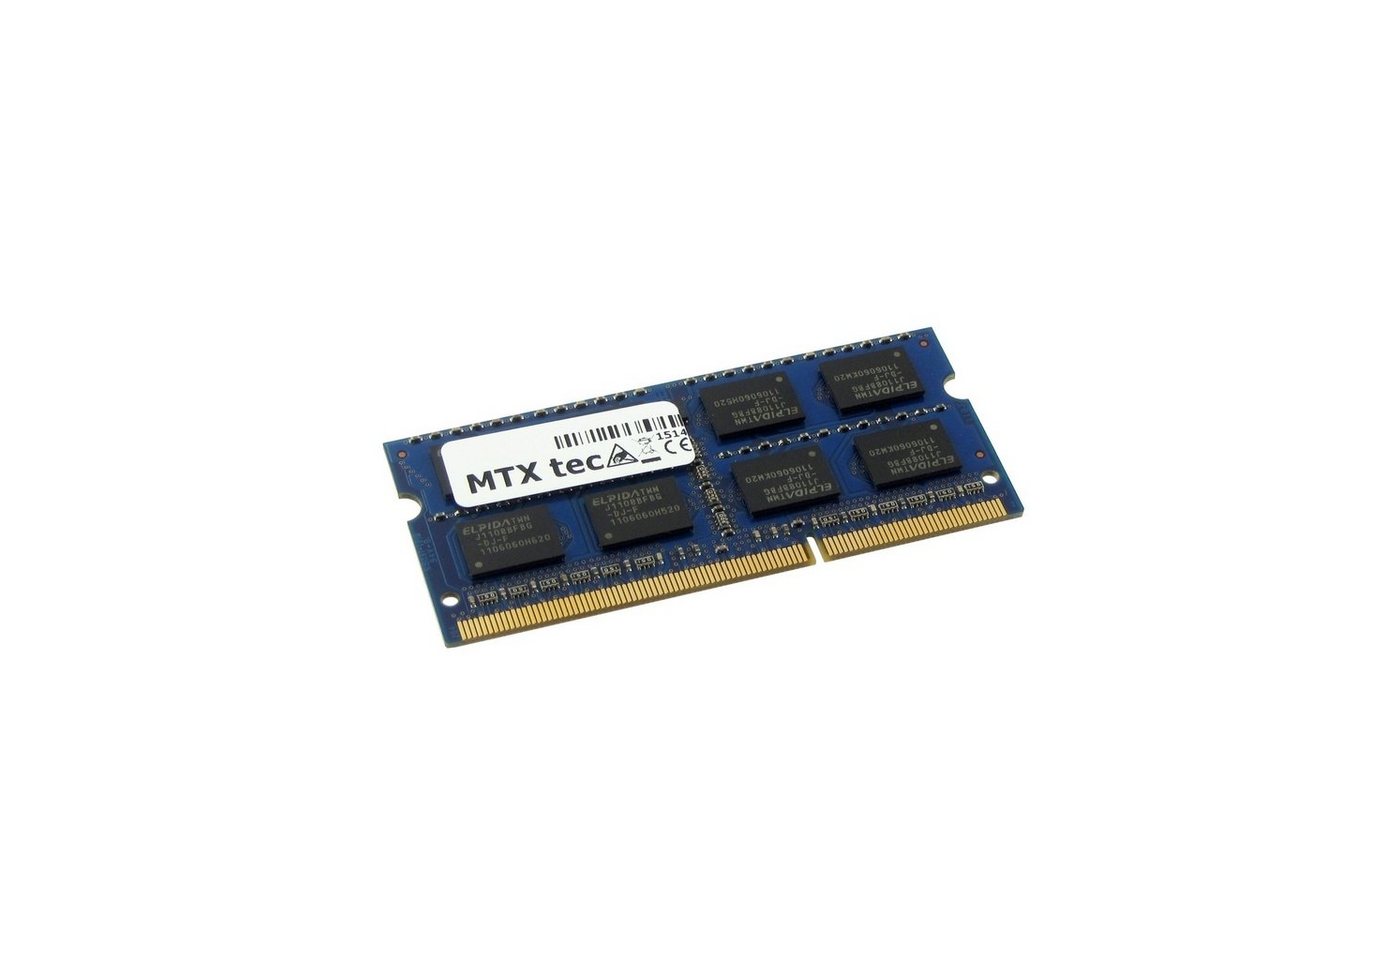 MTXtec Arbeitsspeicher 4 GB RAM für FUJITSU Amilo Xi-3650, Xi3650 Laptop-Arbeitsspeicher von MTXtec